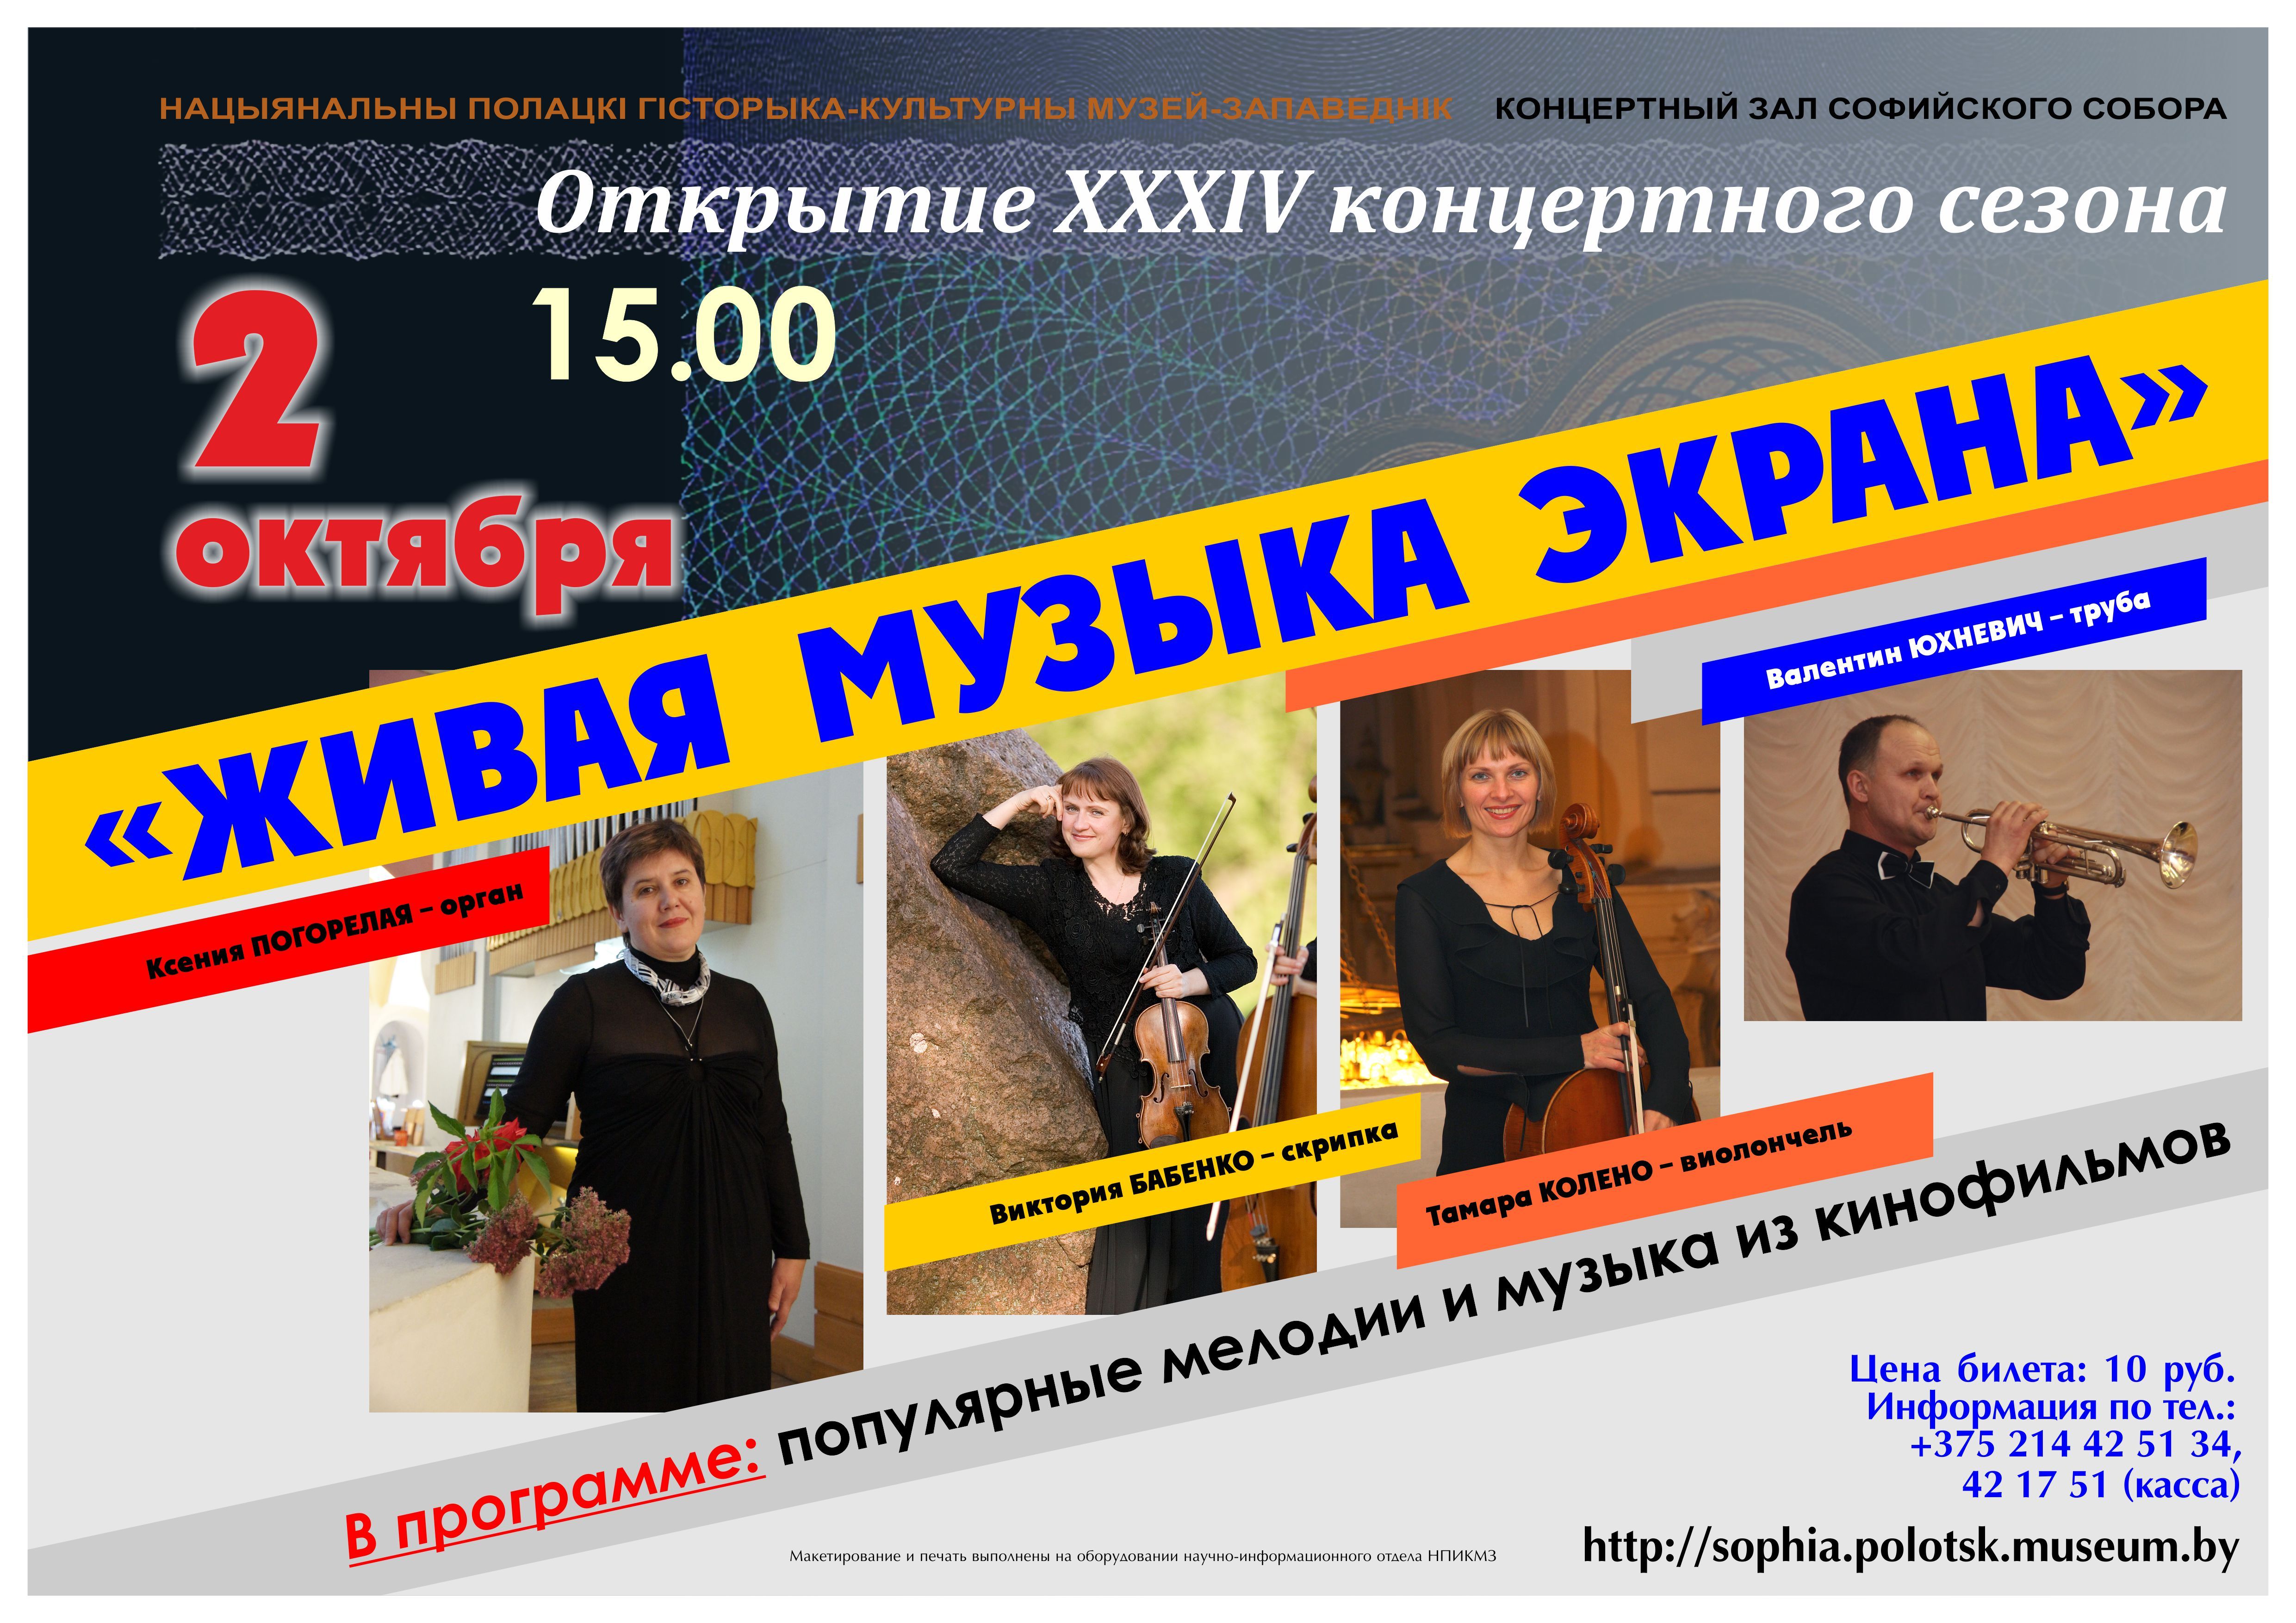 XXXIV концертный сезон в Софийском соборе откроется 2 октября